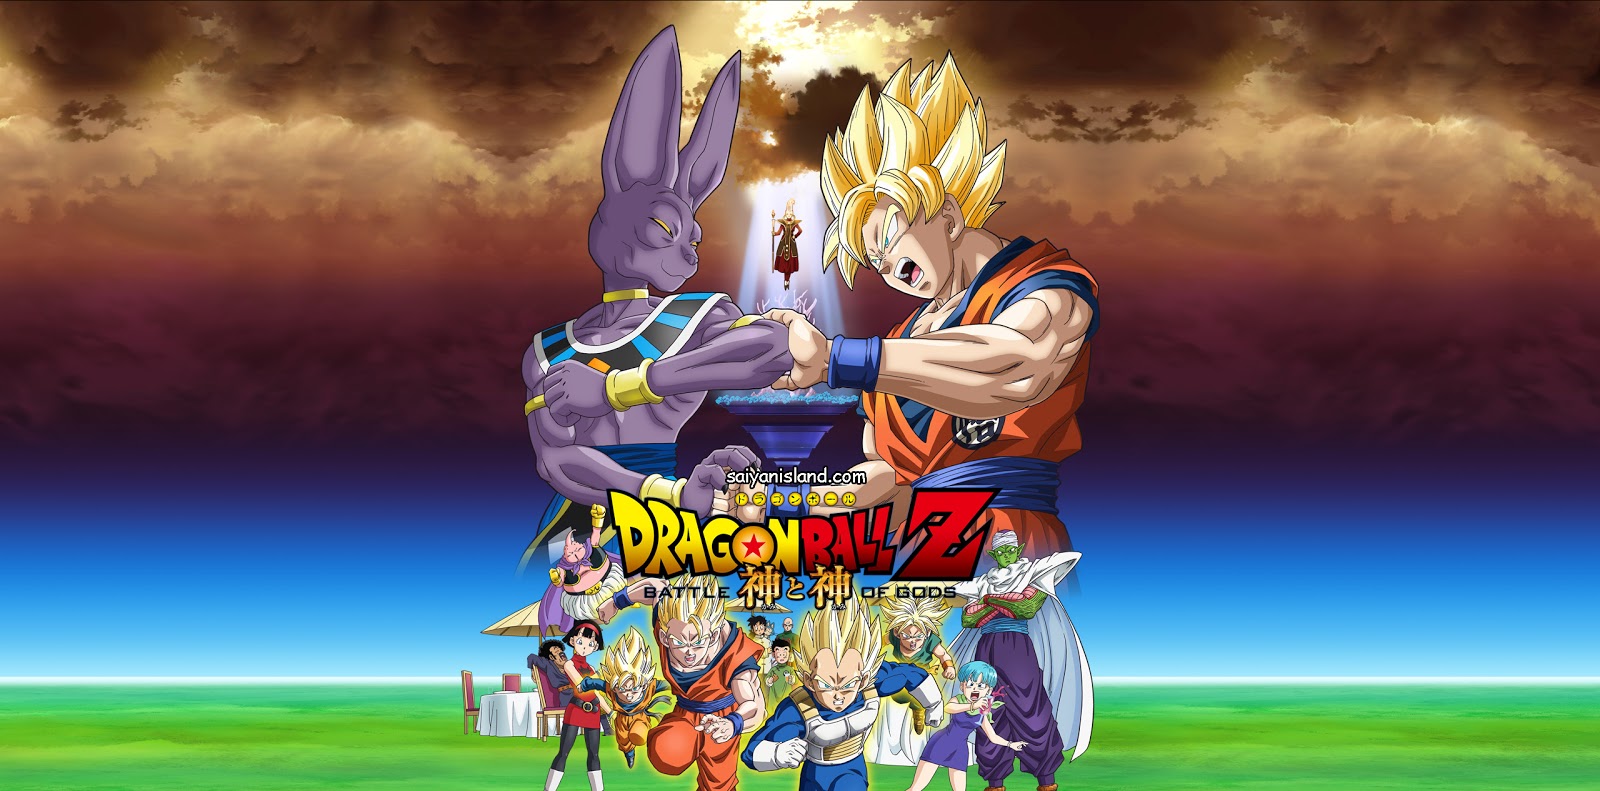 Dragon Ball Super Dublado episódio 42 - Goku luta com Bills usando a f